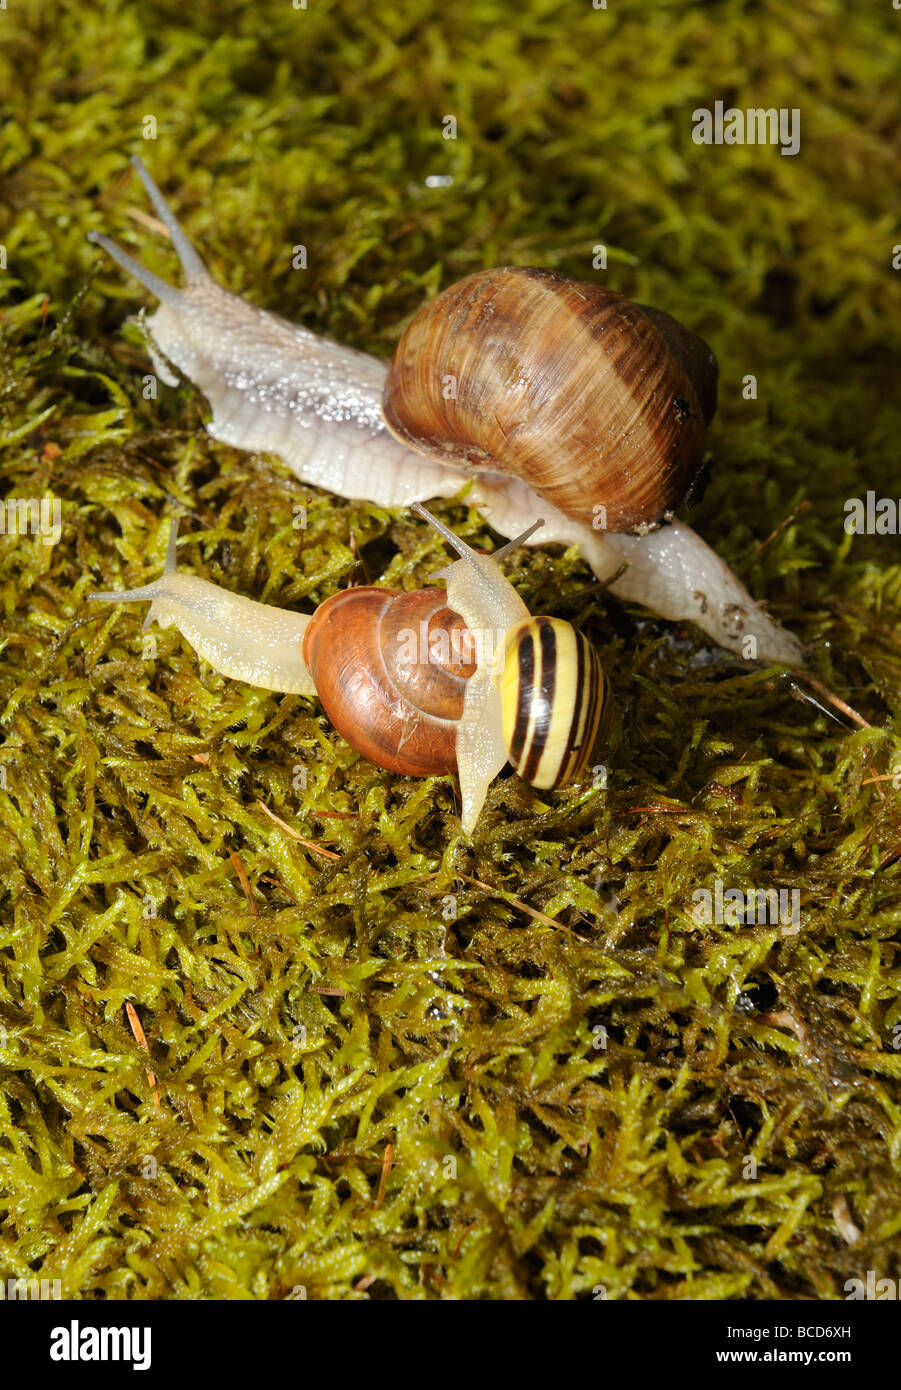 Snail Snails on moss Stock Photo